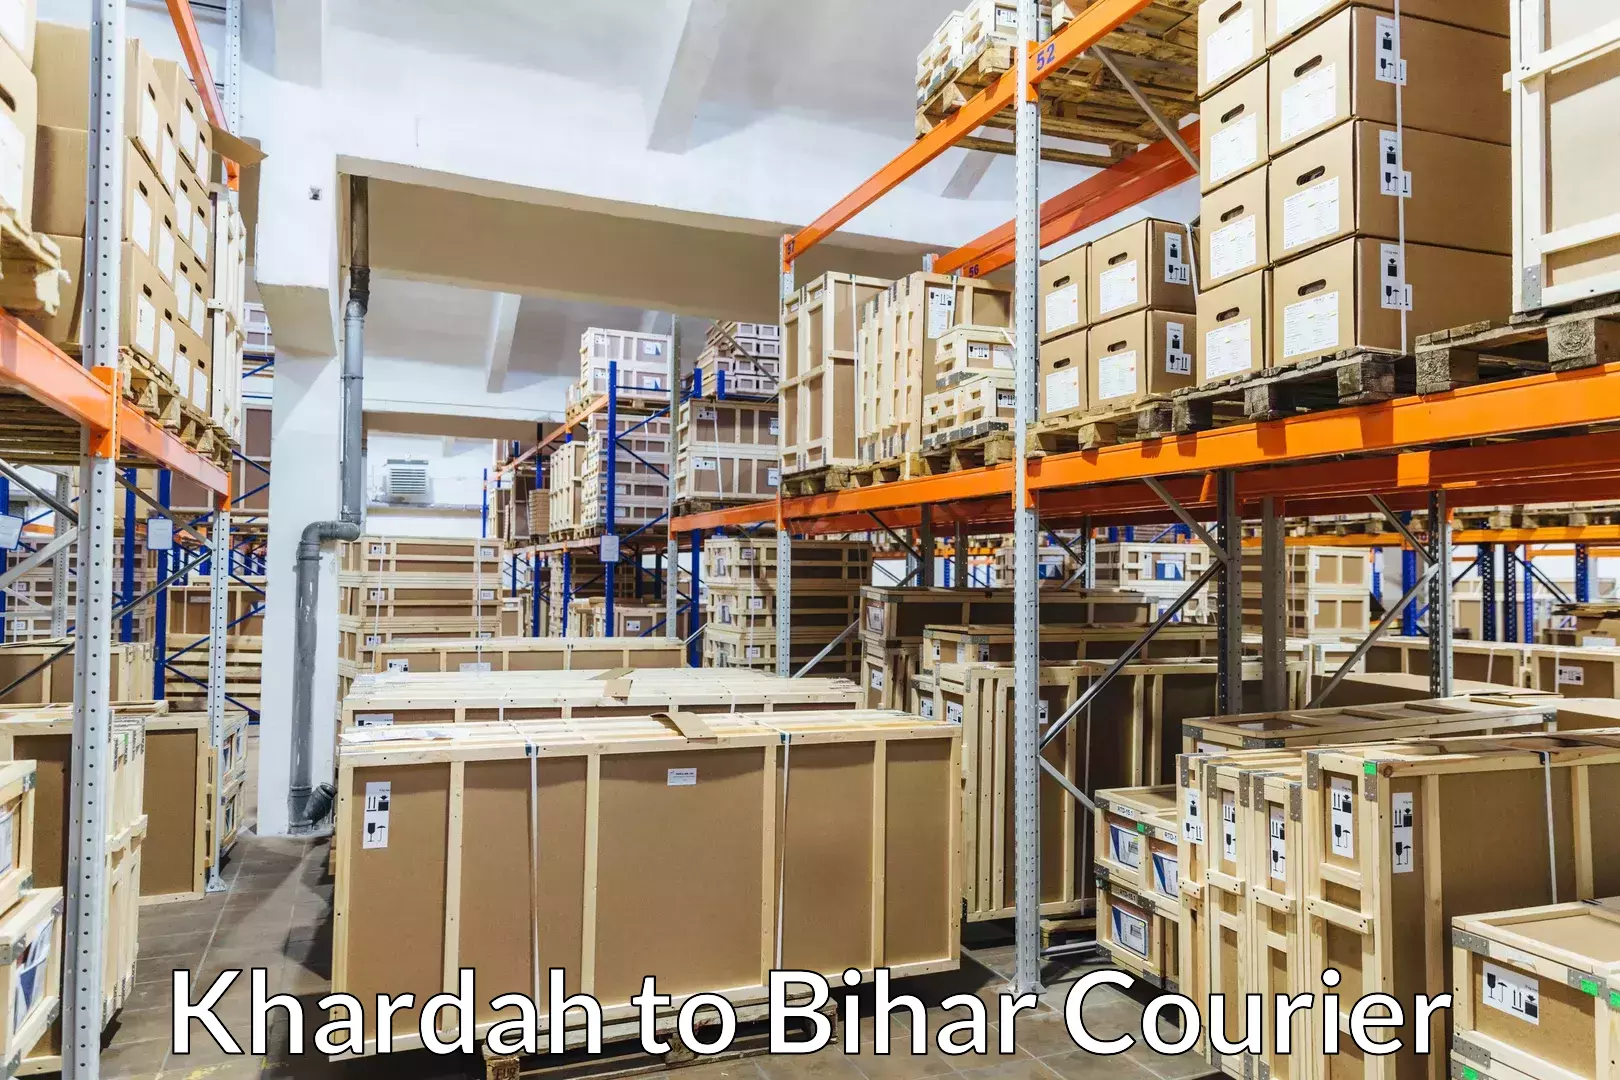 Baggage transport scheduler Khardah to Bihar